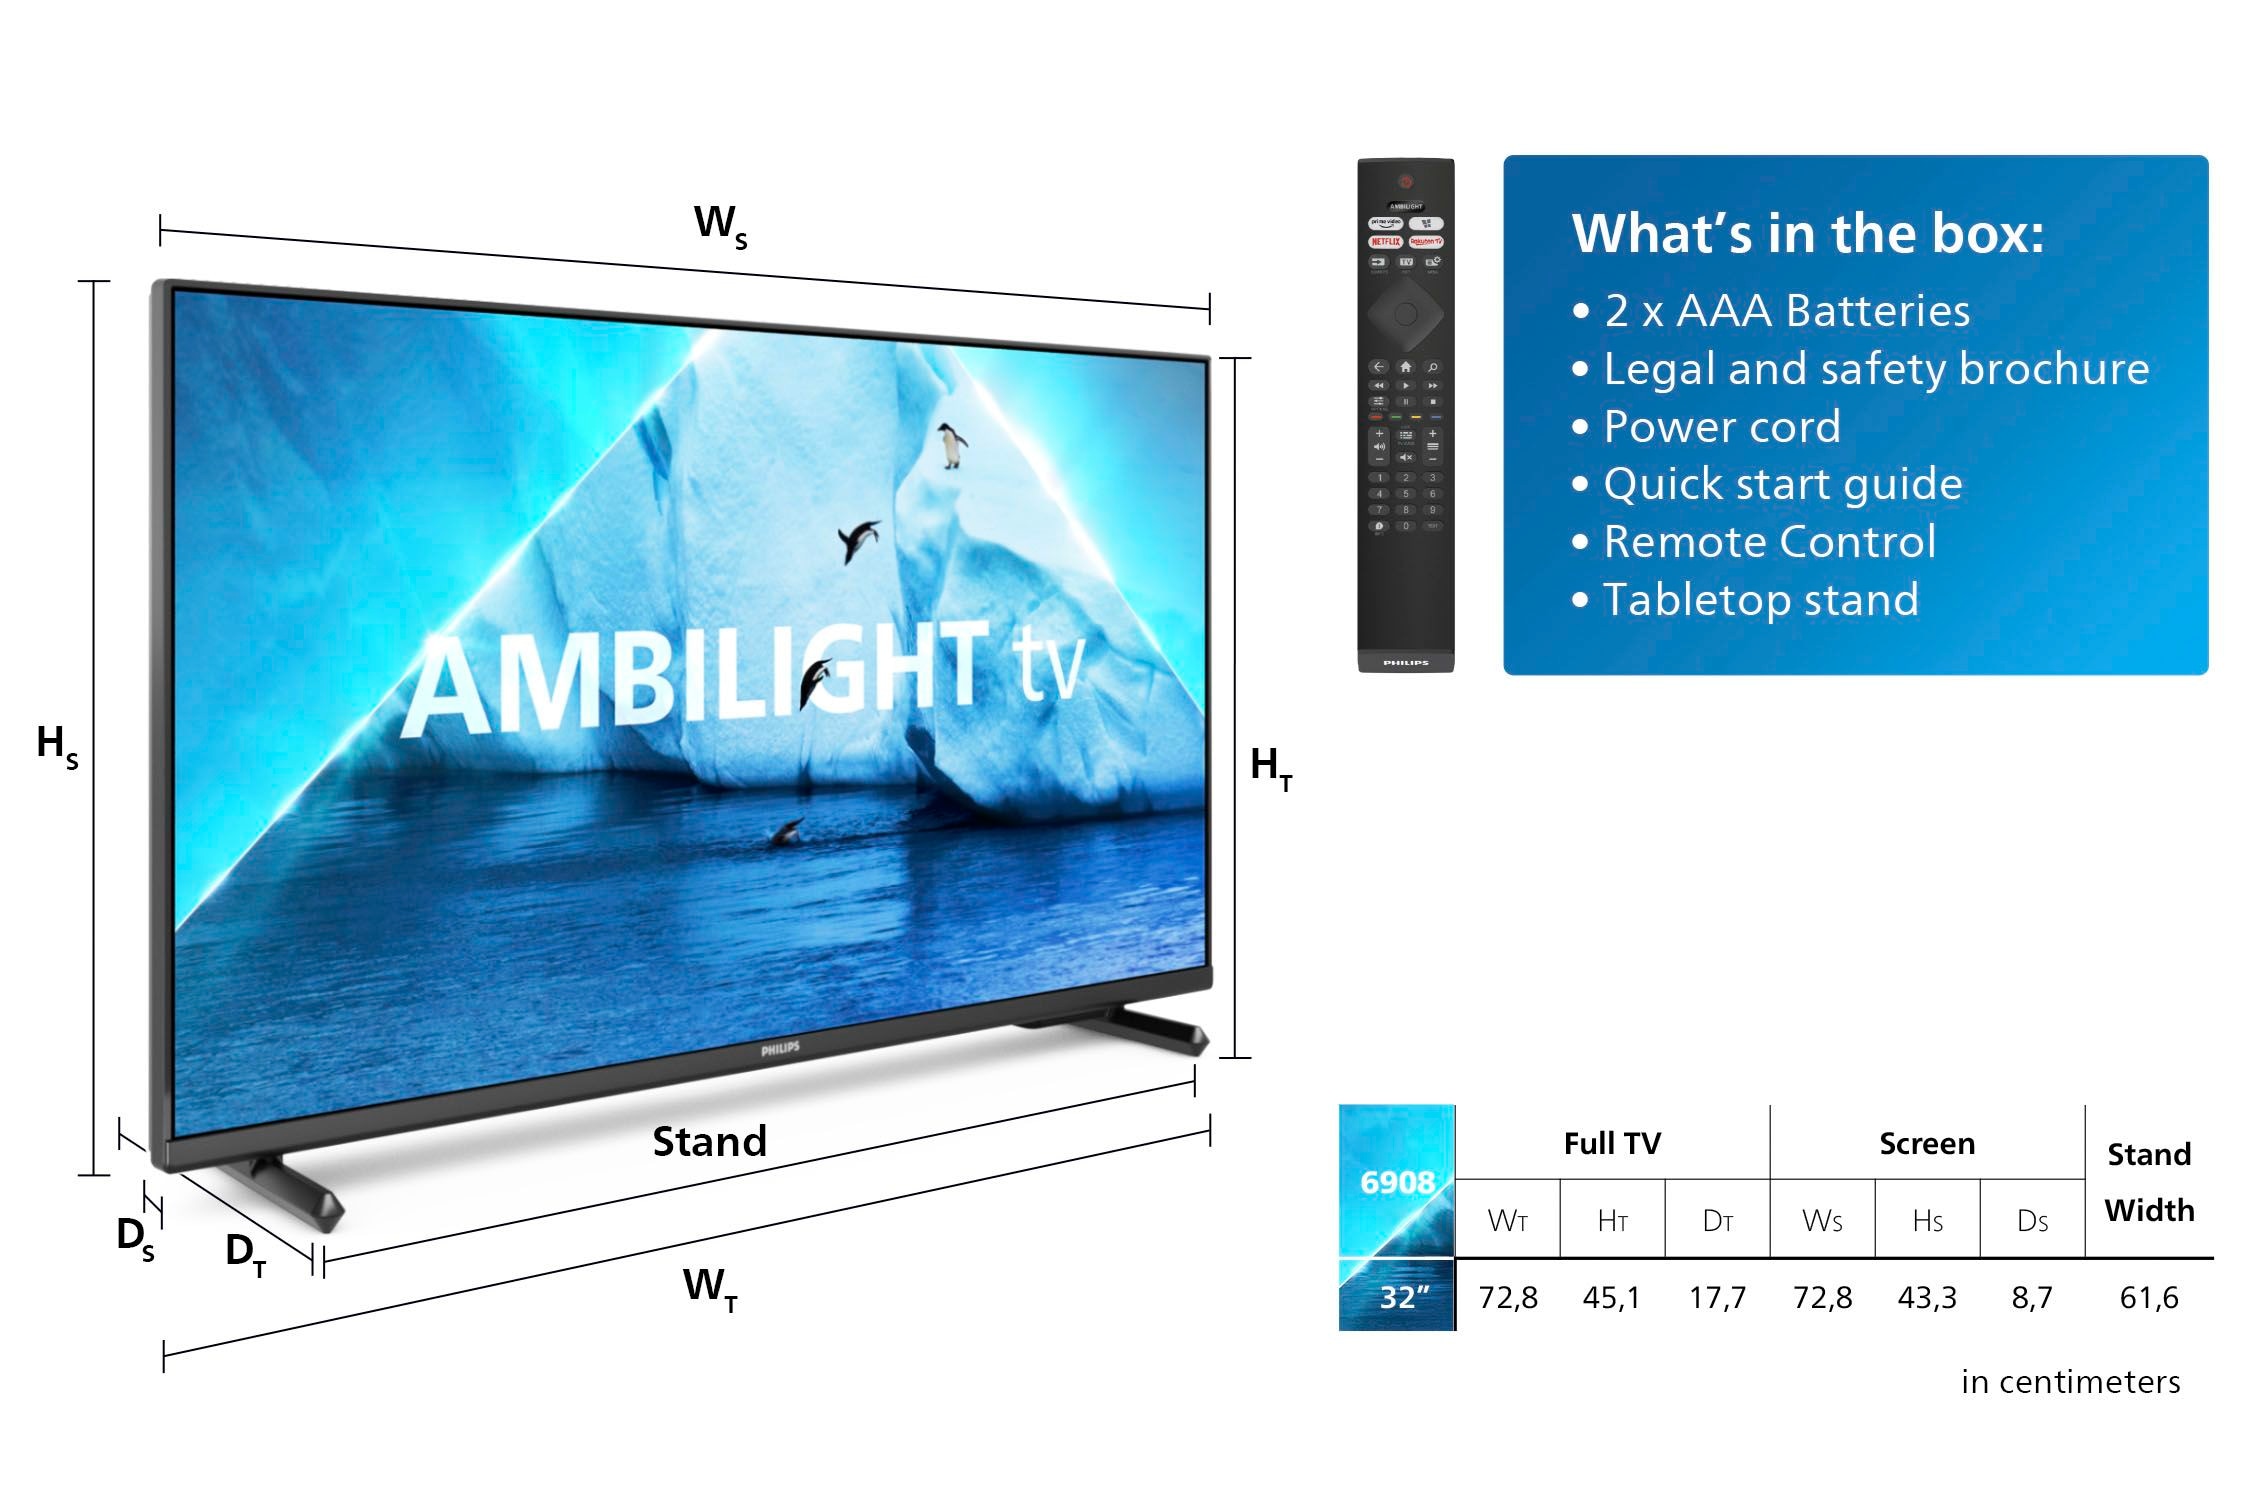 Philips LED-Fernseher, 80 cm/32 Zoll, Full HD, Smart-TV